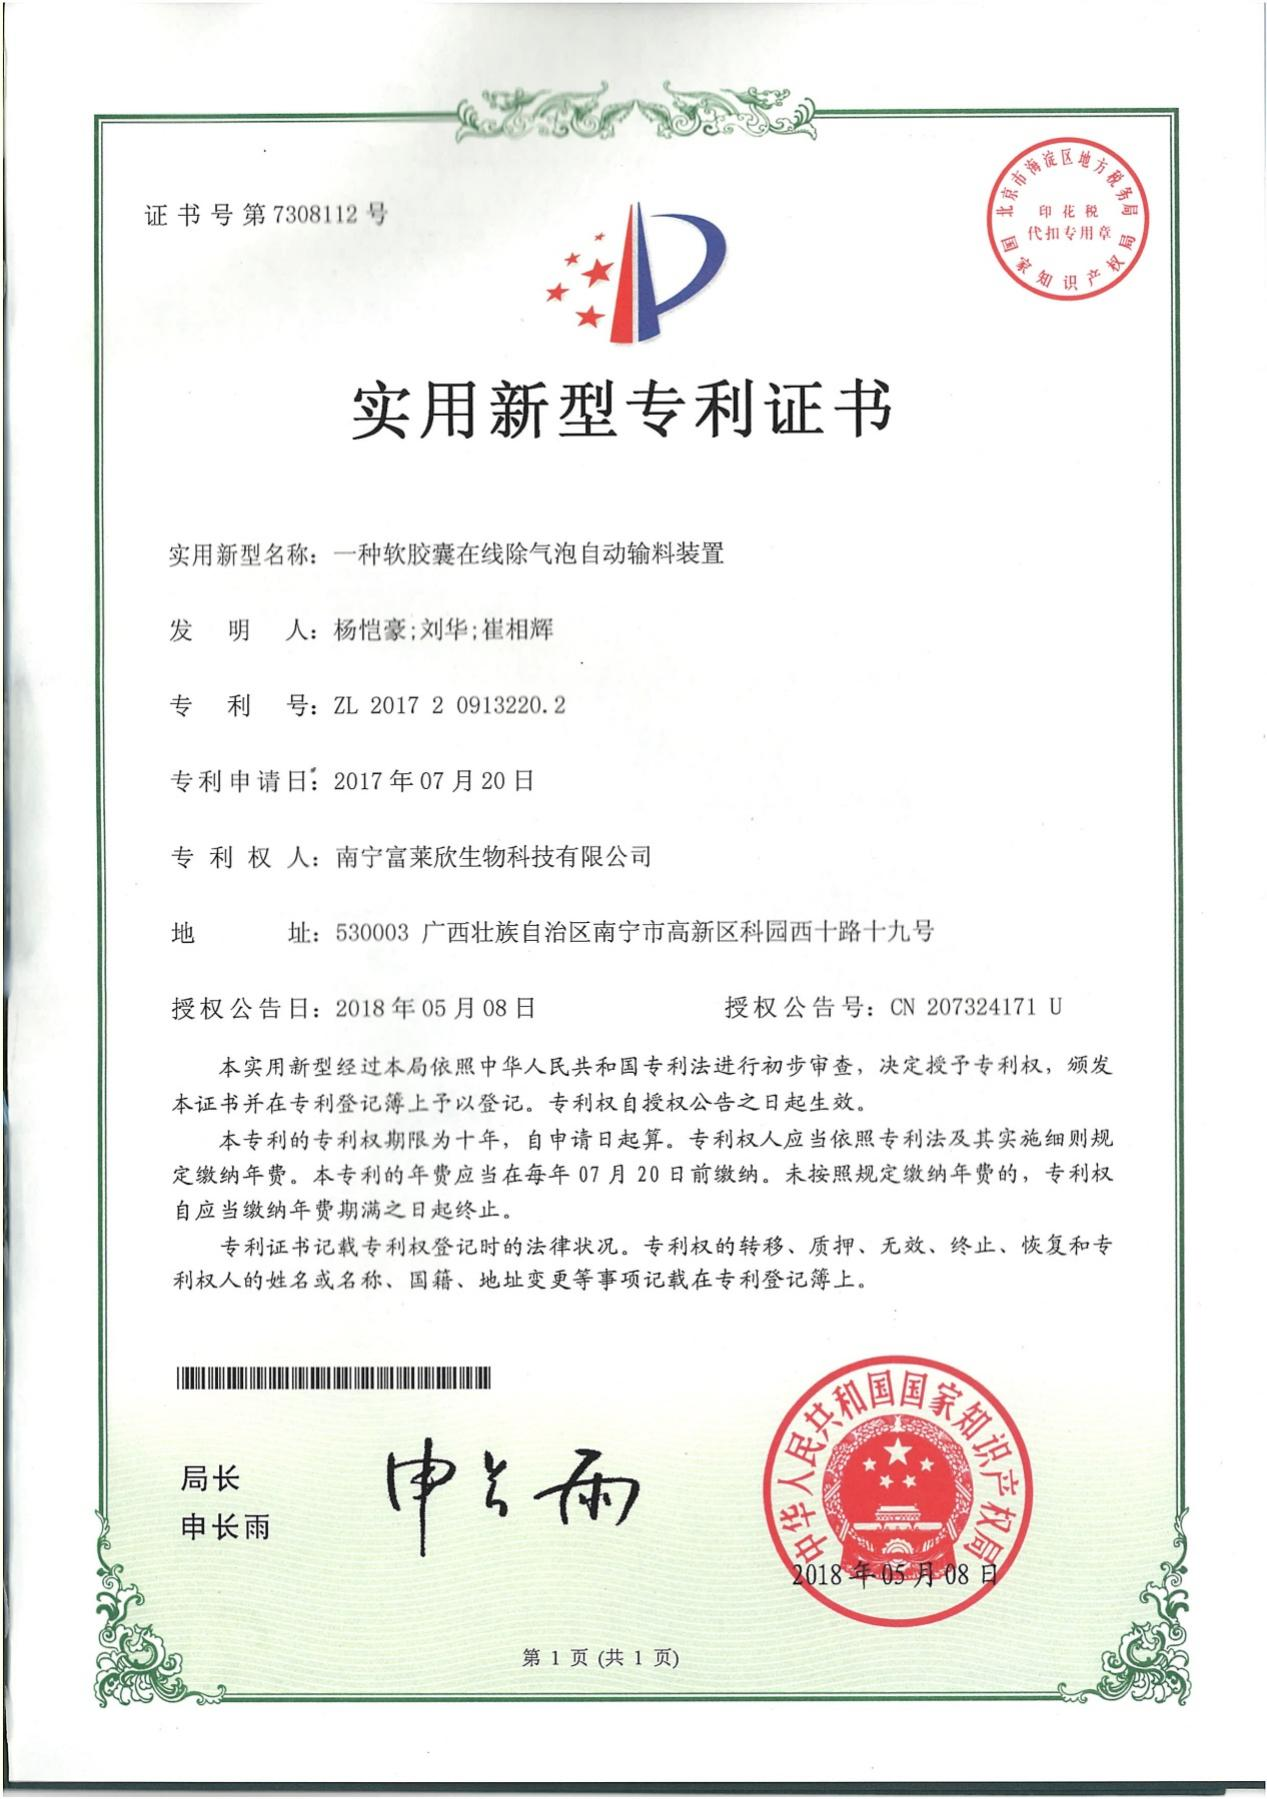 富莱欣大豆磷脂软胶囊生产工艺喜获国家专利